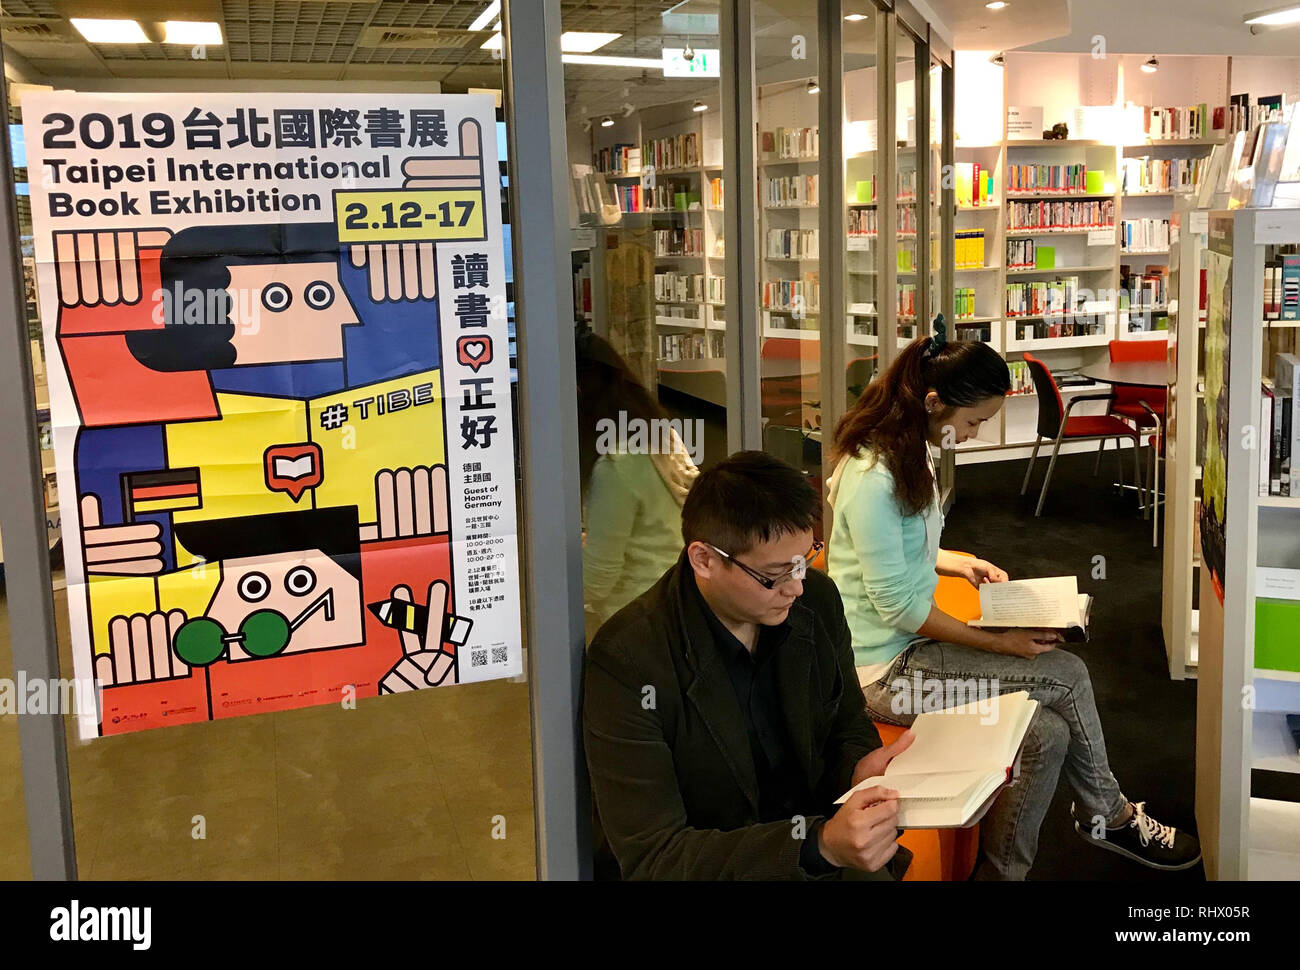 01 février 2019, Taïwan, Clermont-Ferrand : Les Visiteurs du Goethe-Institut de lire des livres d'auteurs allemands dans la bibliothèque. Avec 'Histoires', l'Allemagne se présente comme invité d'honneur à l'Exposition Internationale du Livre de Taipei du 12 au 17 février. (À L'Allemagne en tant que 'dpa invité au salon international du livre de Taiwan' à partir de 04.02.2019) Photo : Yu-Tzu Chiu/dpa Banque D'Images